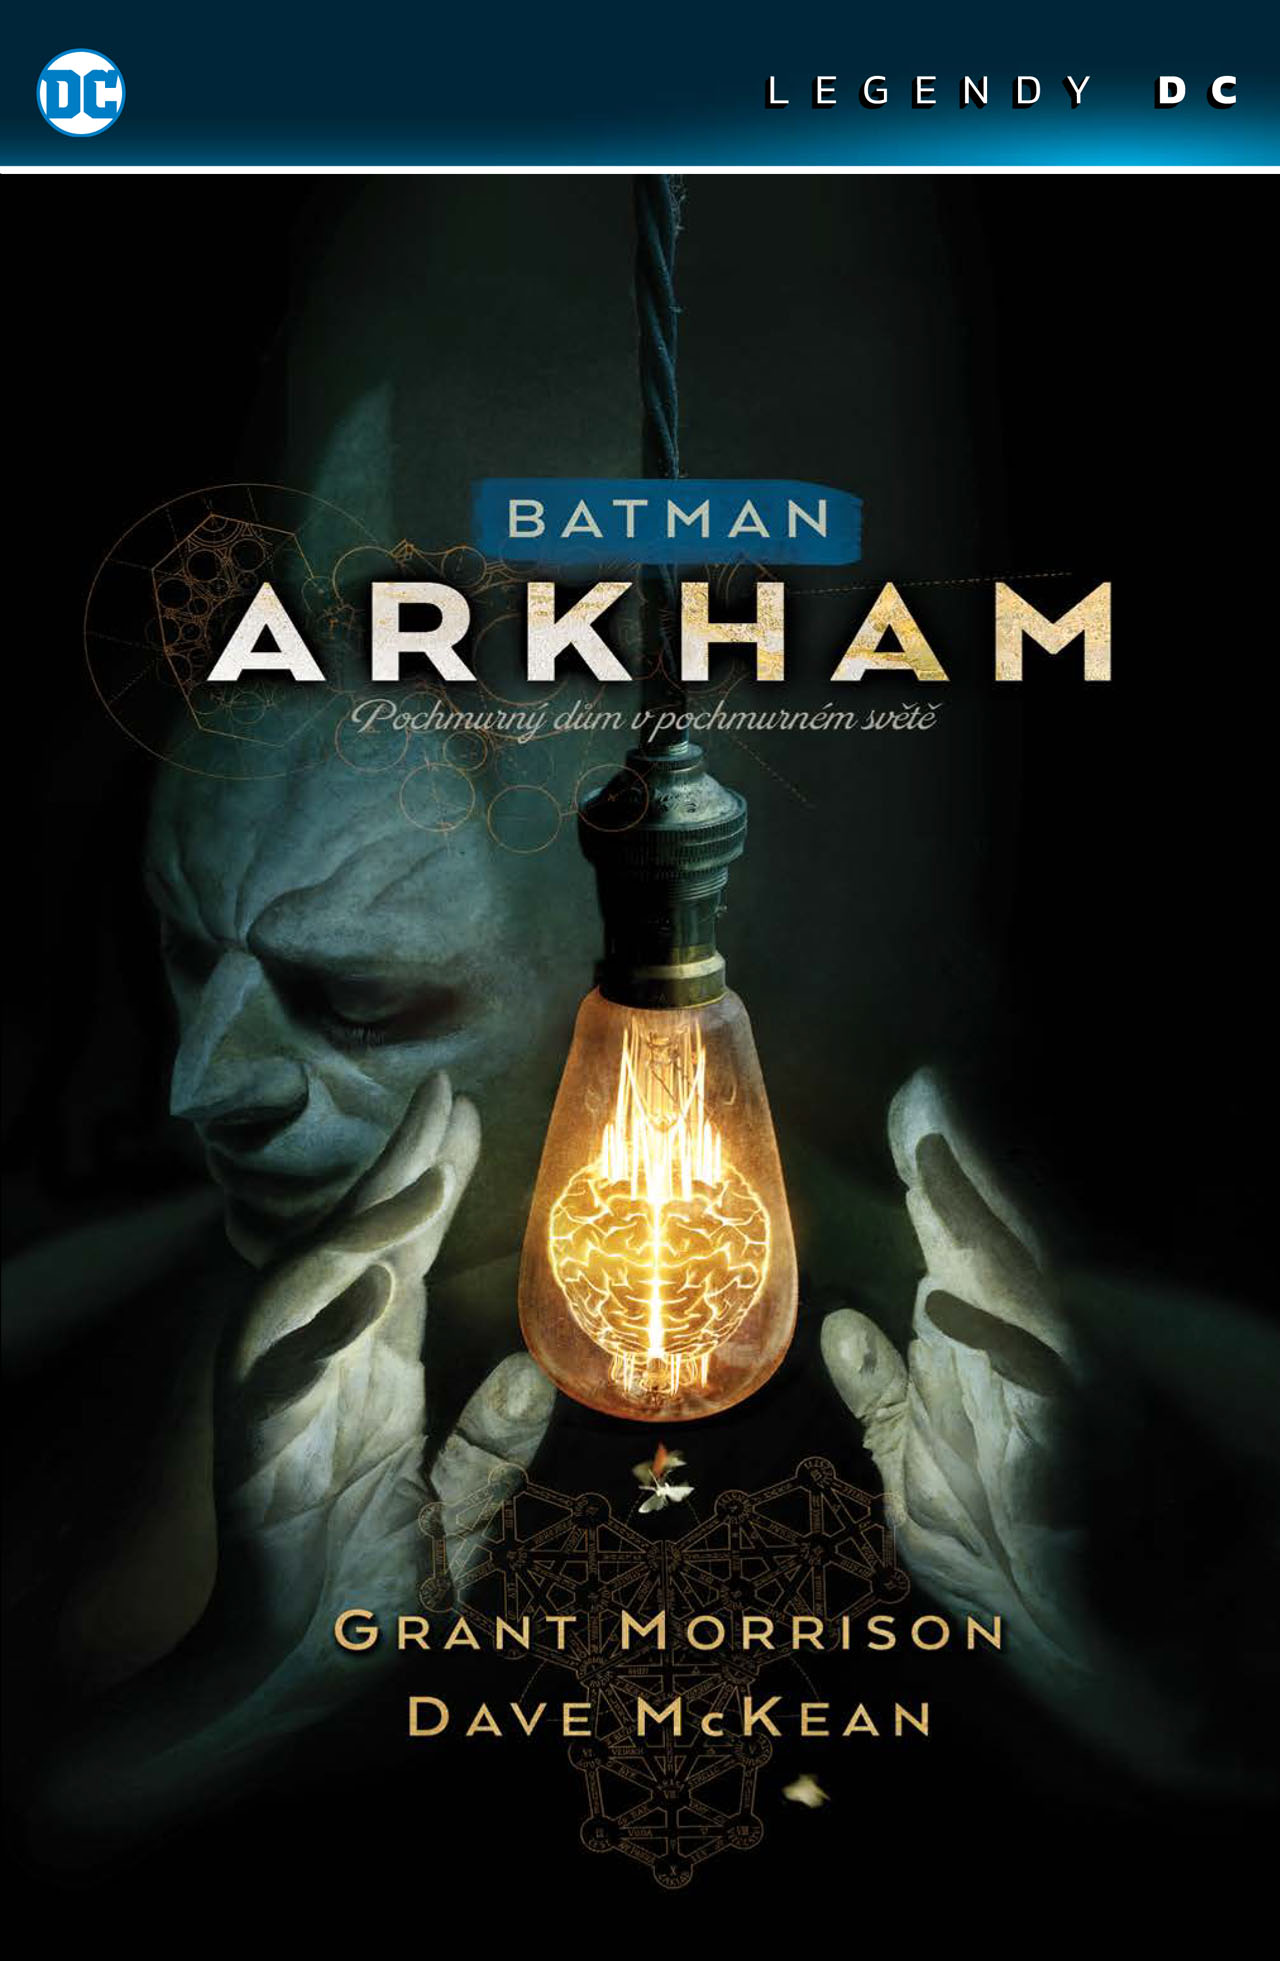 obrázek k novince - Batman: Arkham - Pochmurný dům v pochmurném světě (Legendy DC)